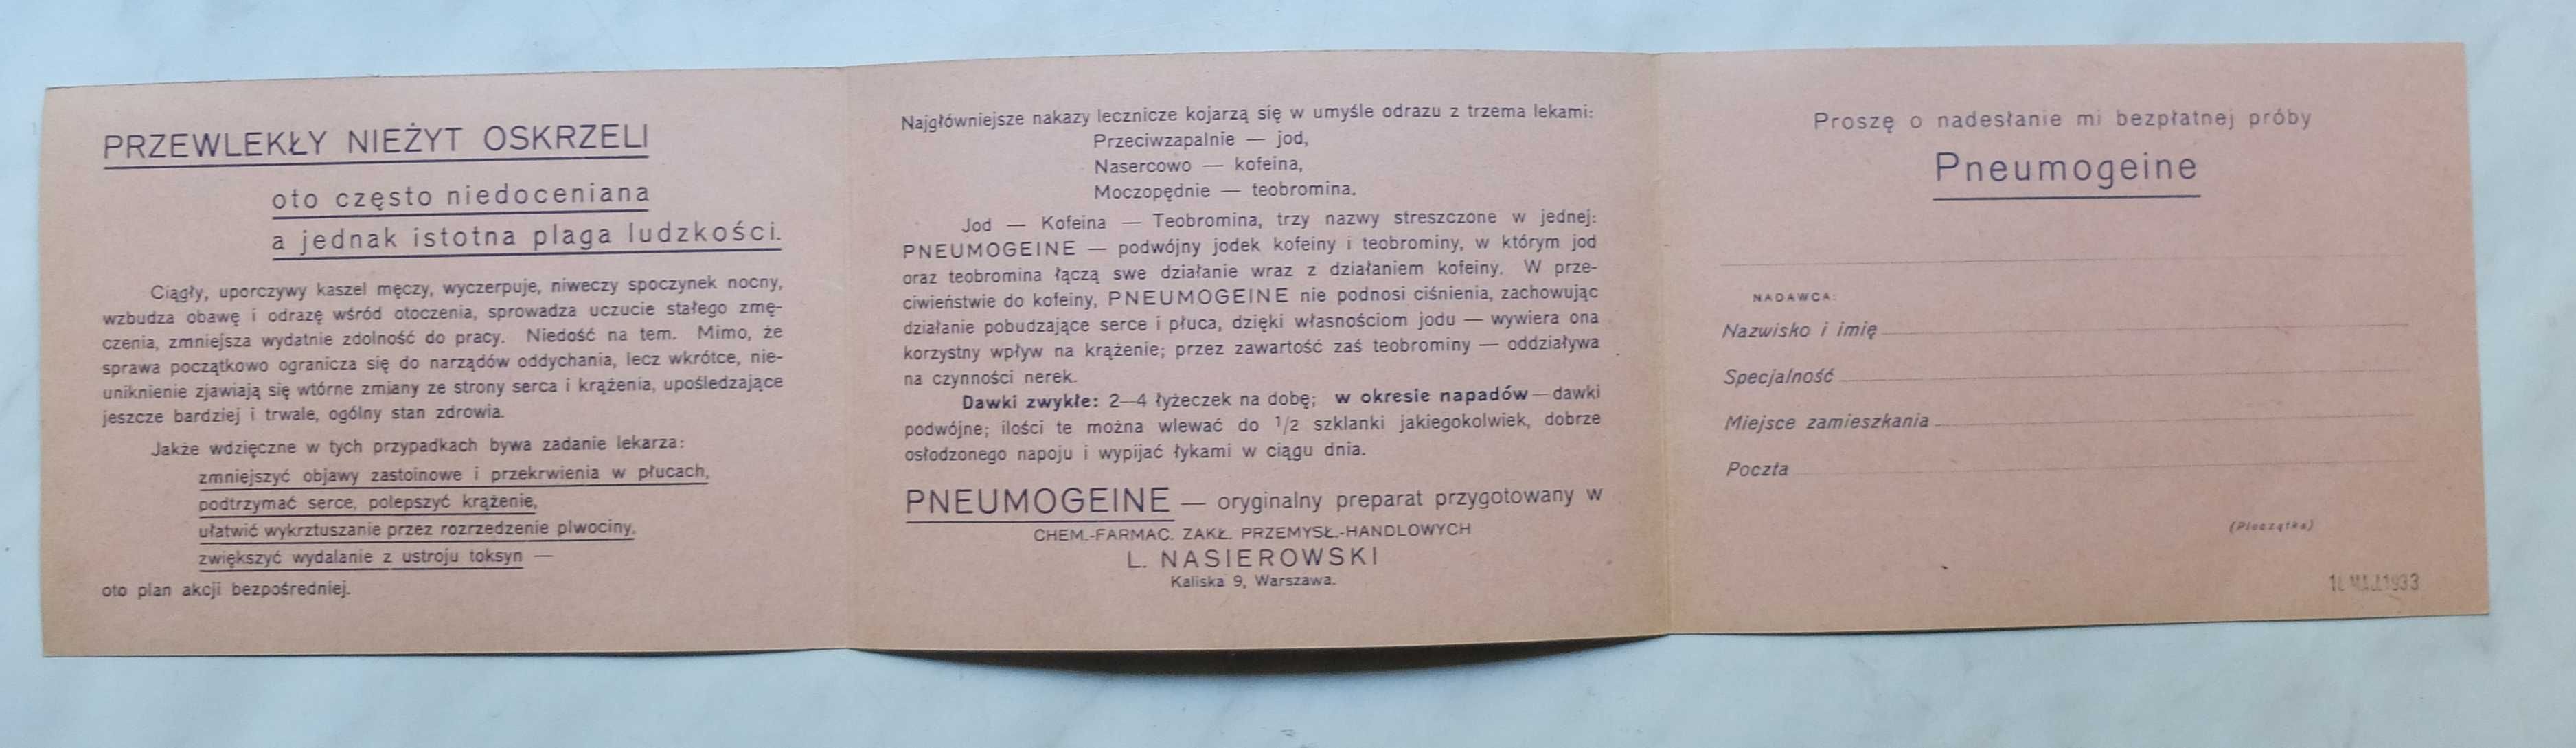 Przedwojenny druk reklamowy Nasierowski Warszawa Pneumogeine 1933 rok.